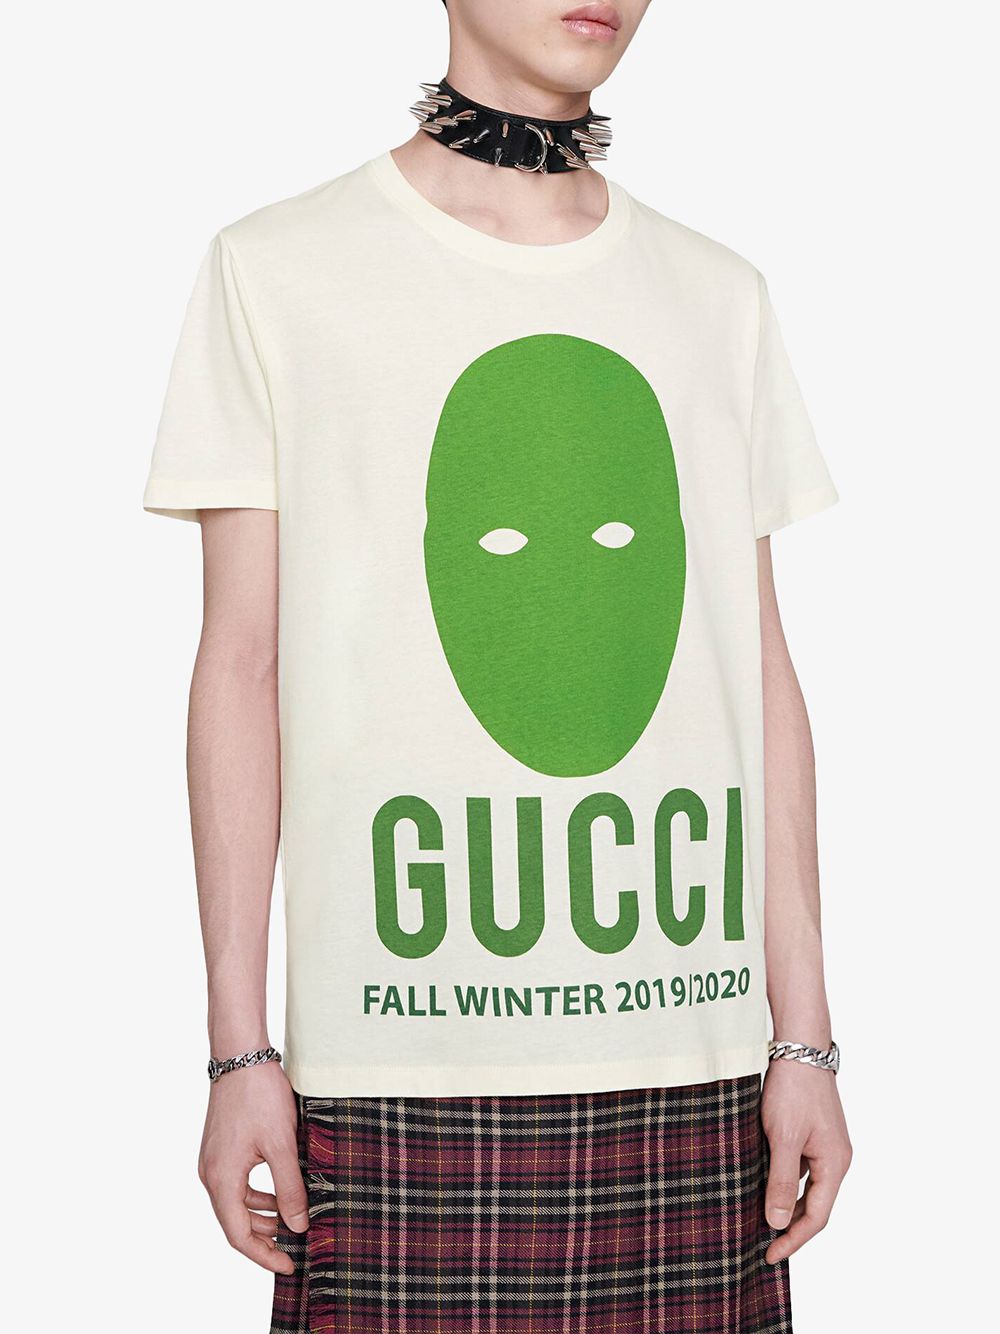 фото Gucci футболка оверсайз Gucci Manifesto